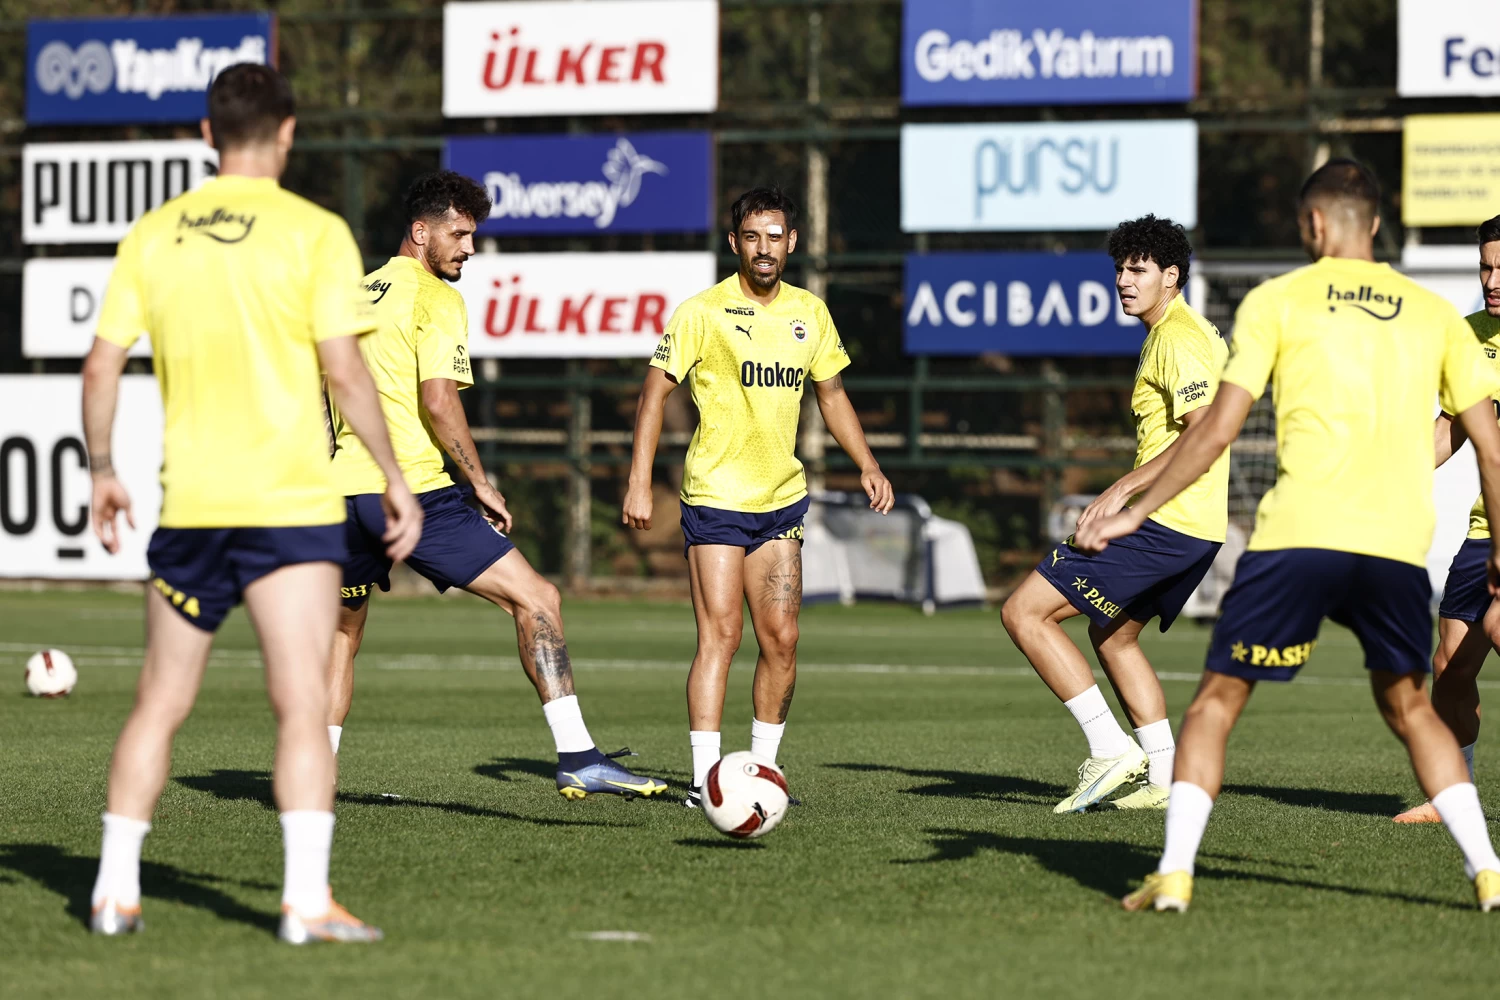 Fenerbahçe, Antalyaspor maçının hazırlıklarını tamamladı